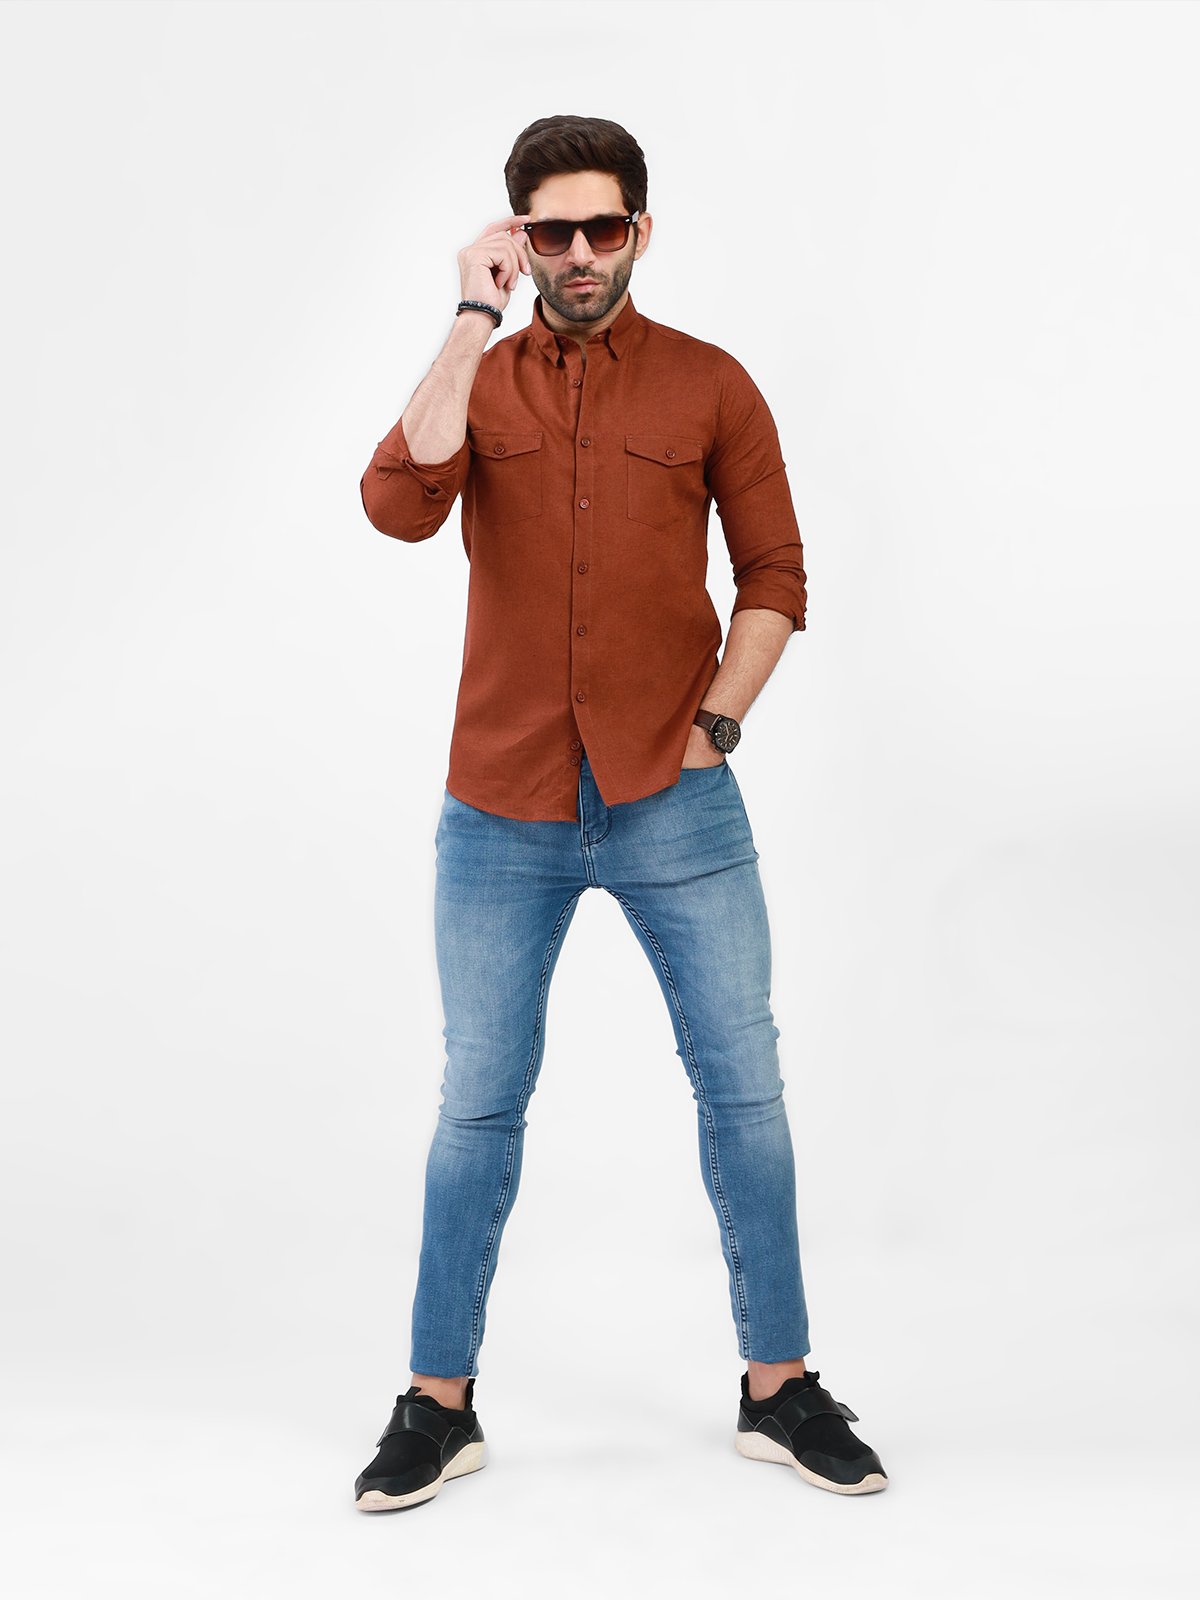 Men's Rust Casual Shirt - FMTS21-31462